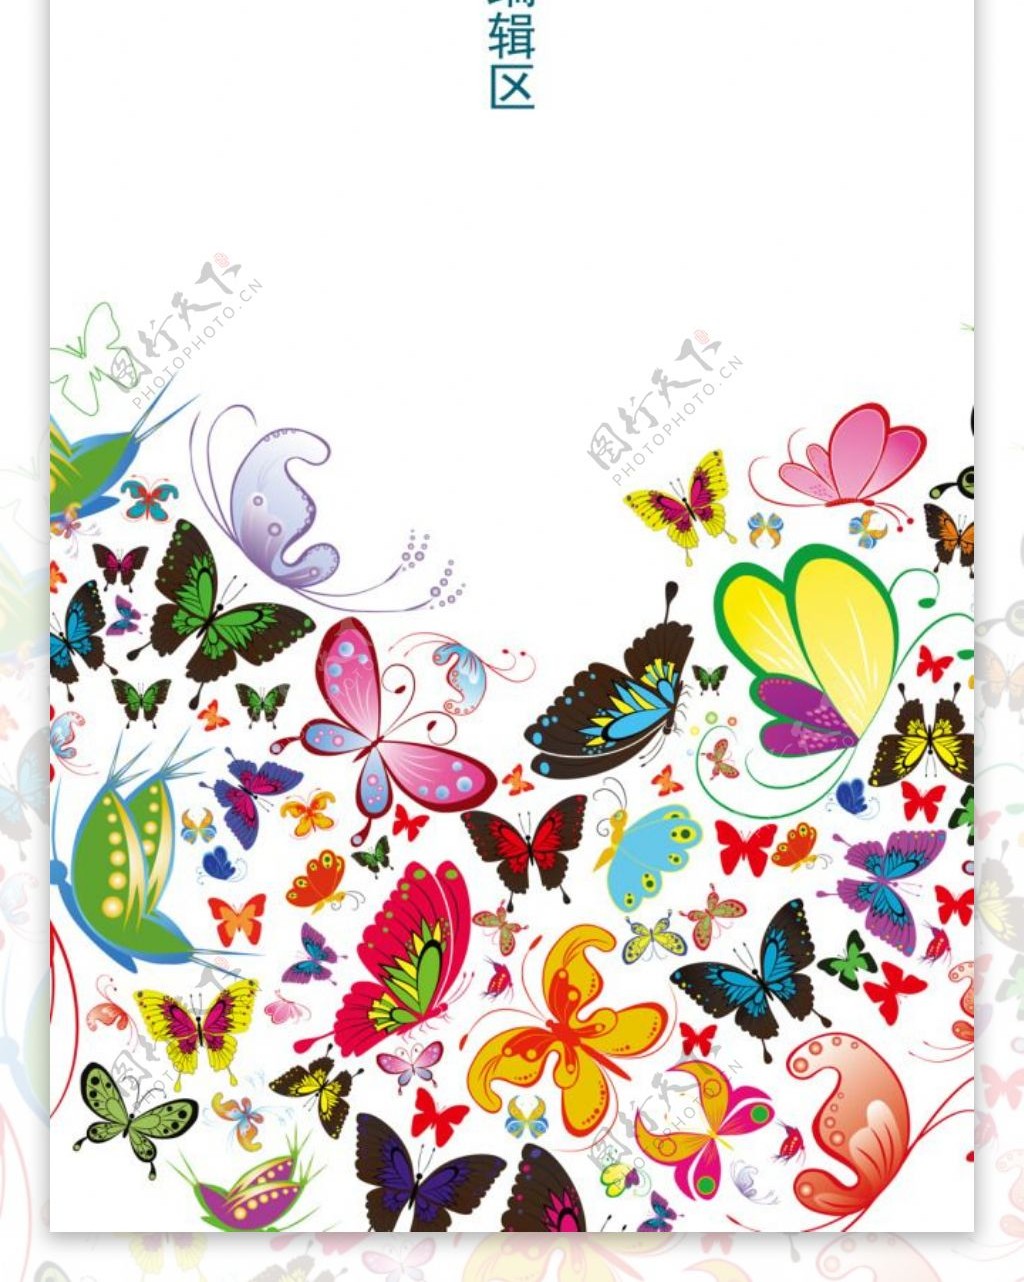 精美炫彩蝴蝶素材展板设计素材画面